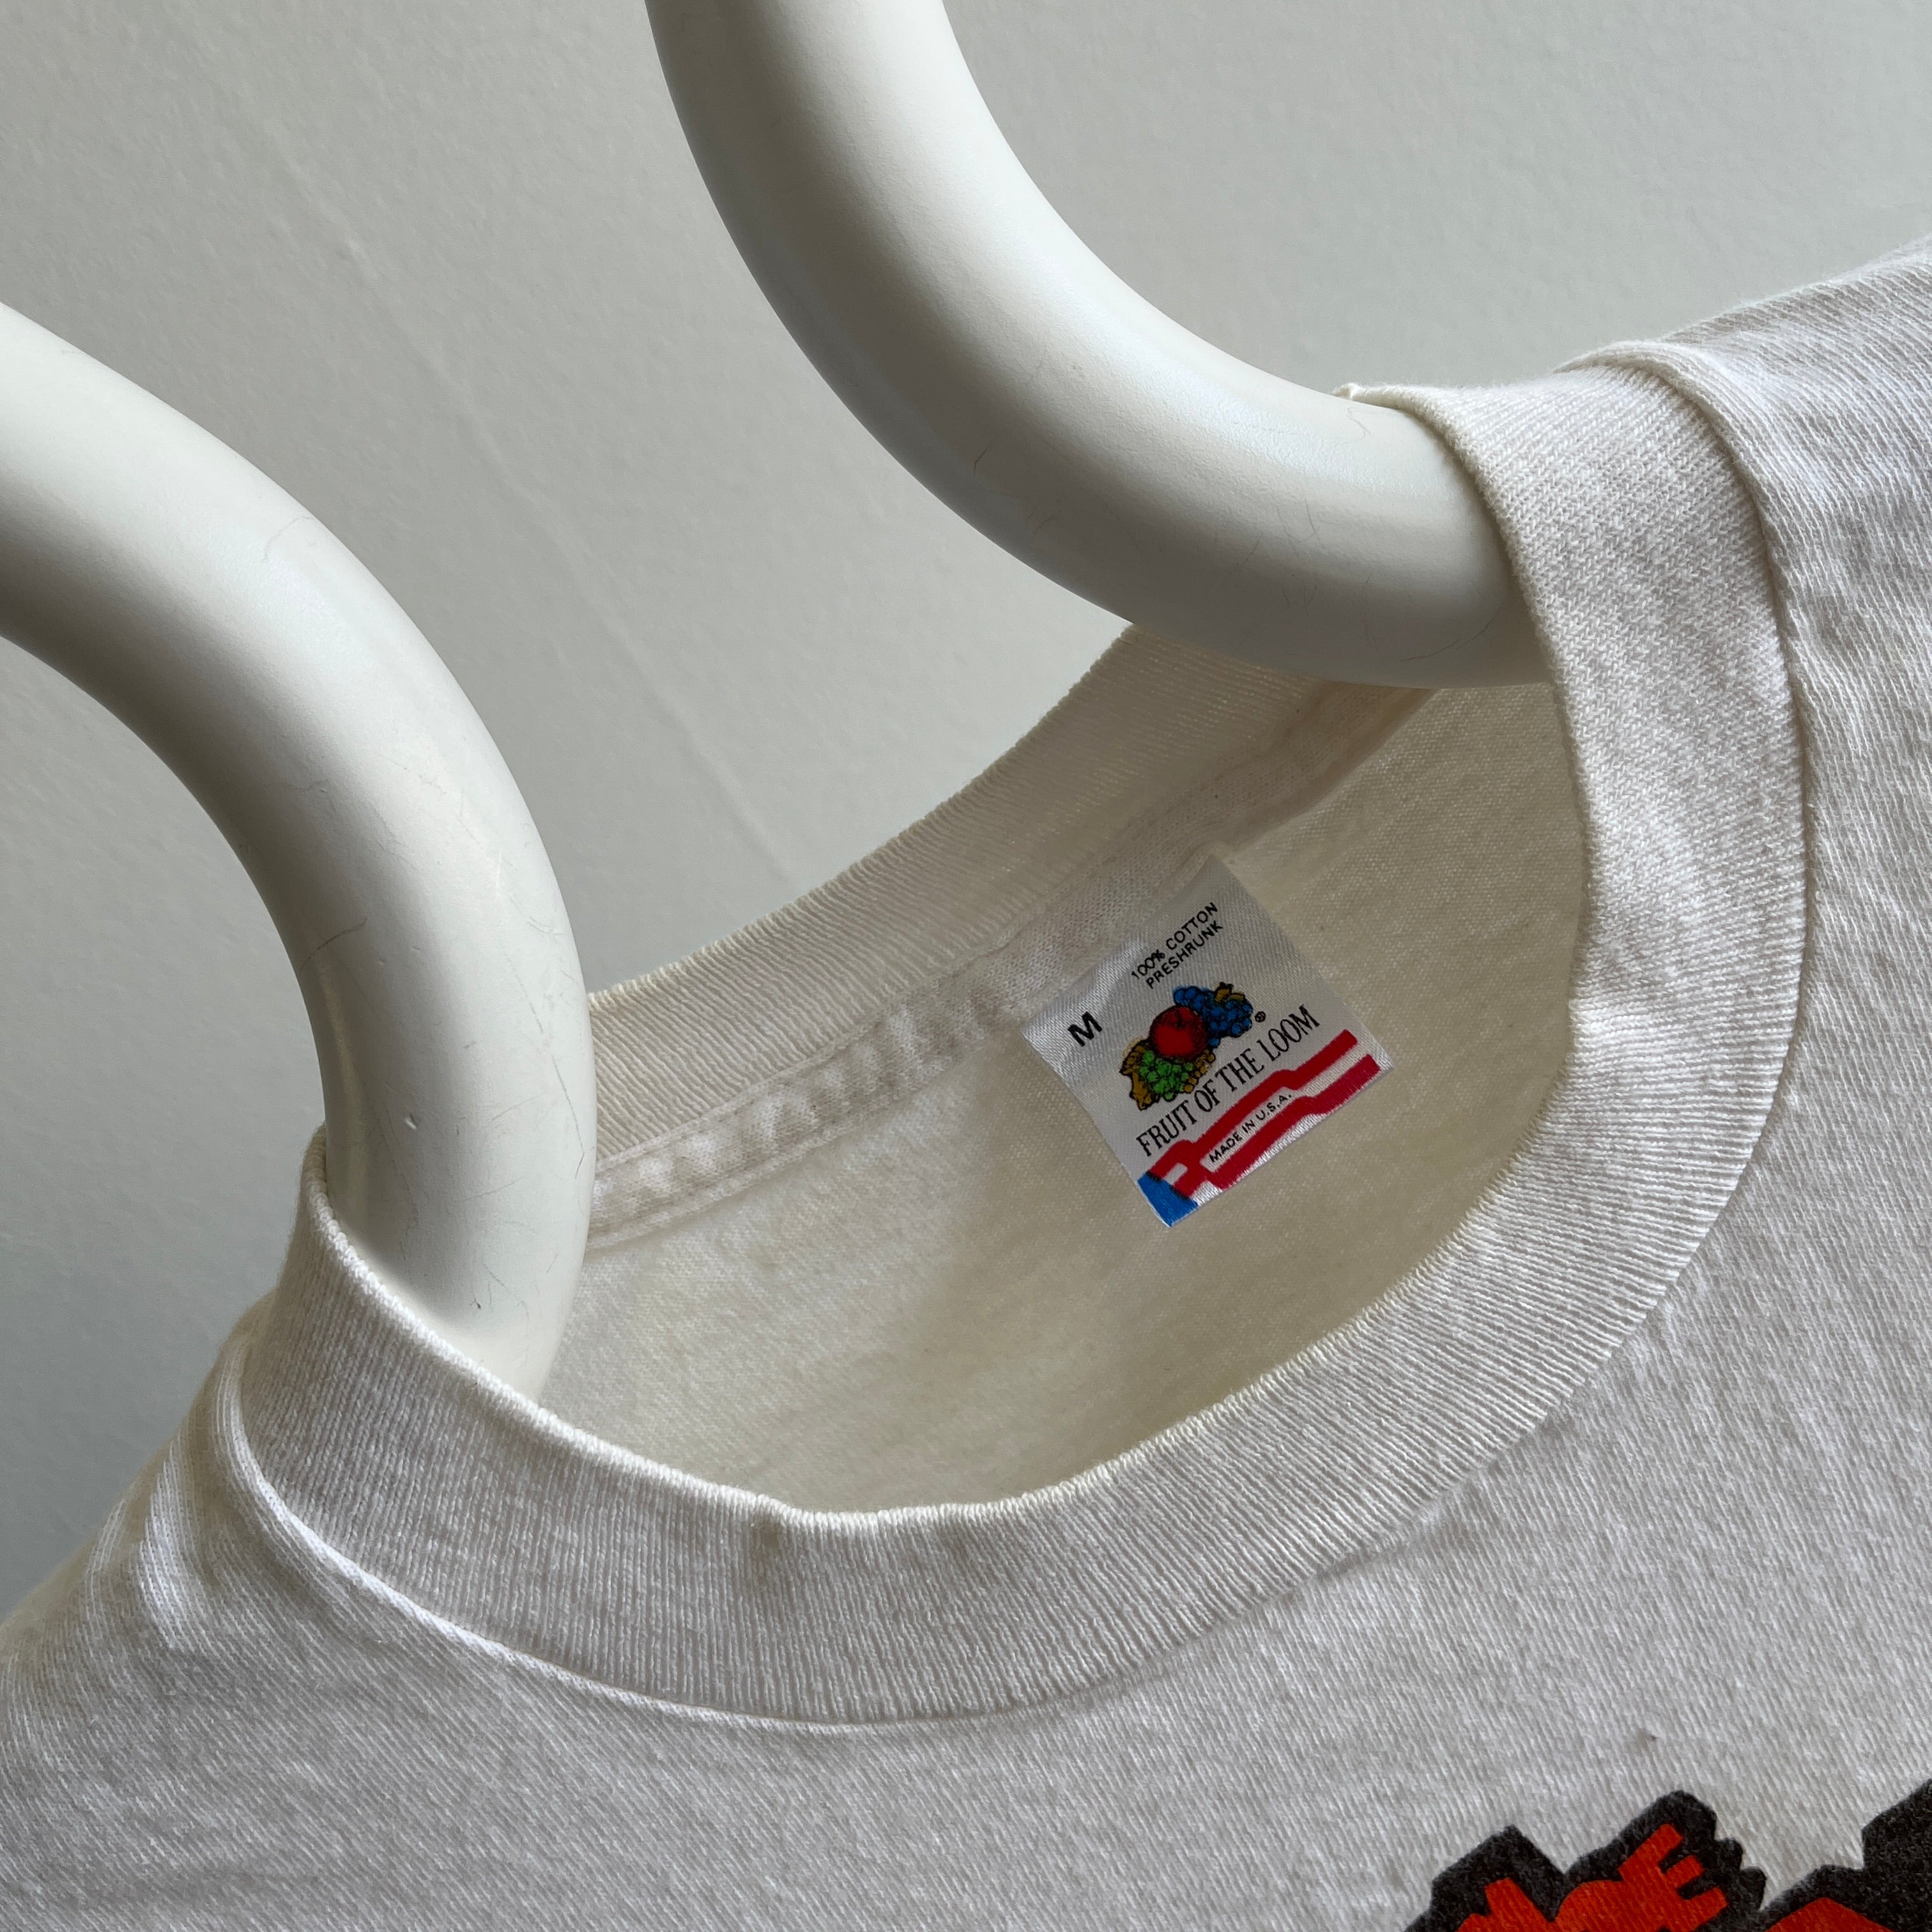 1980s The Bug Man Inc T-Shirt by FOTL